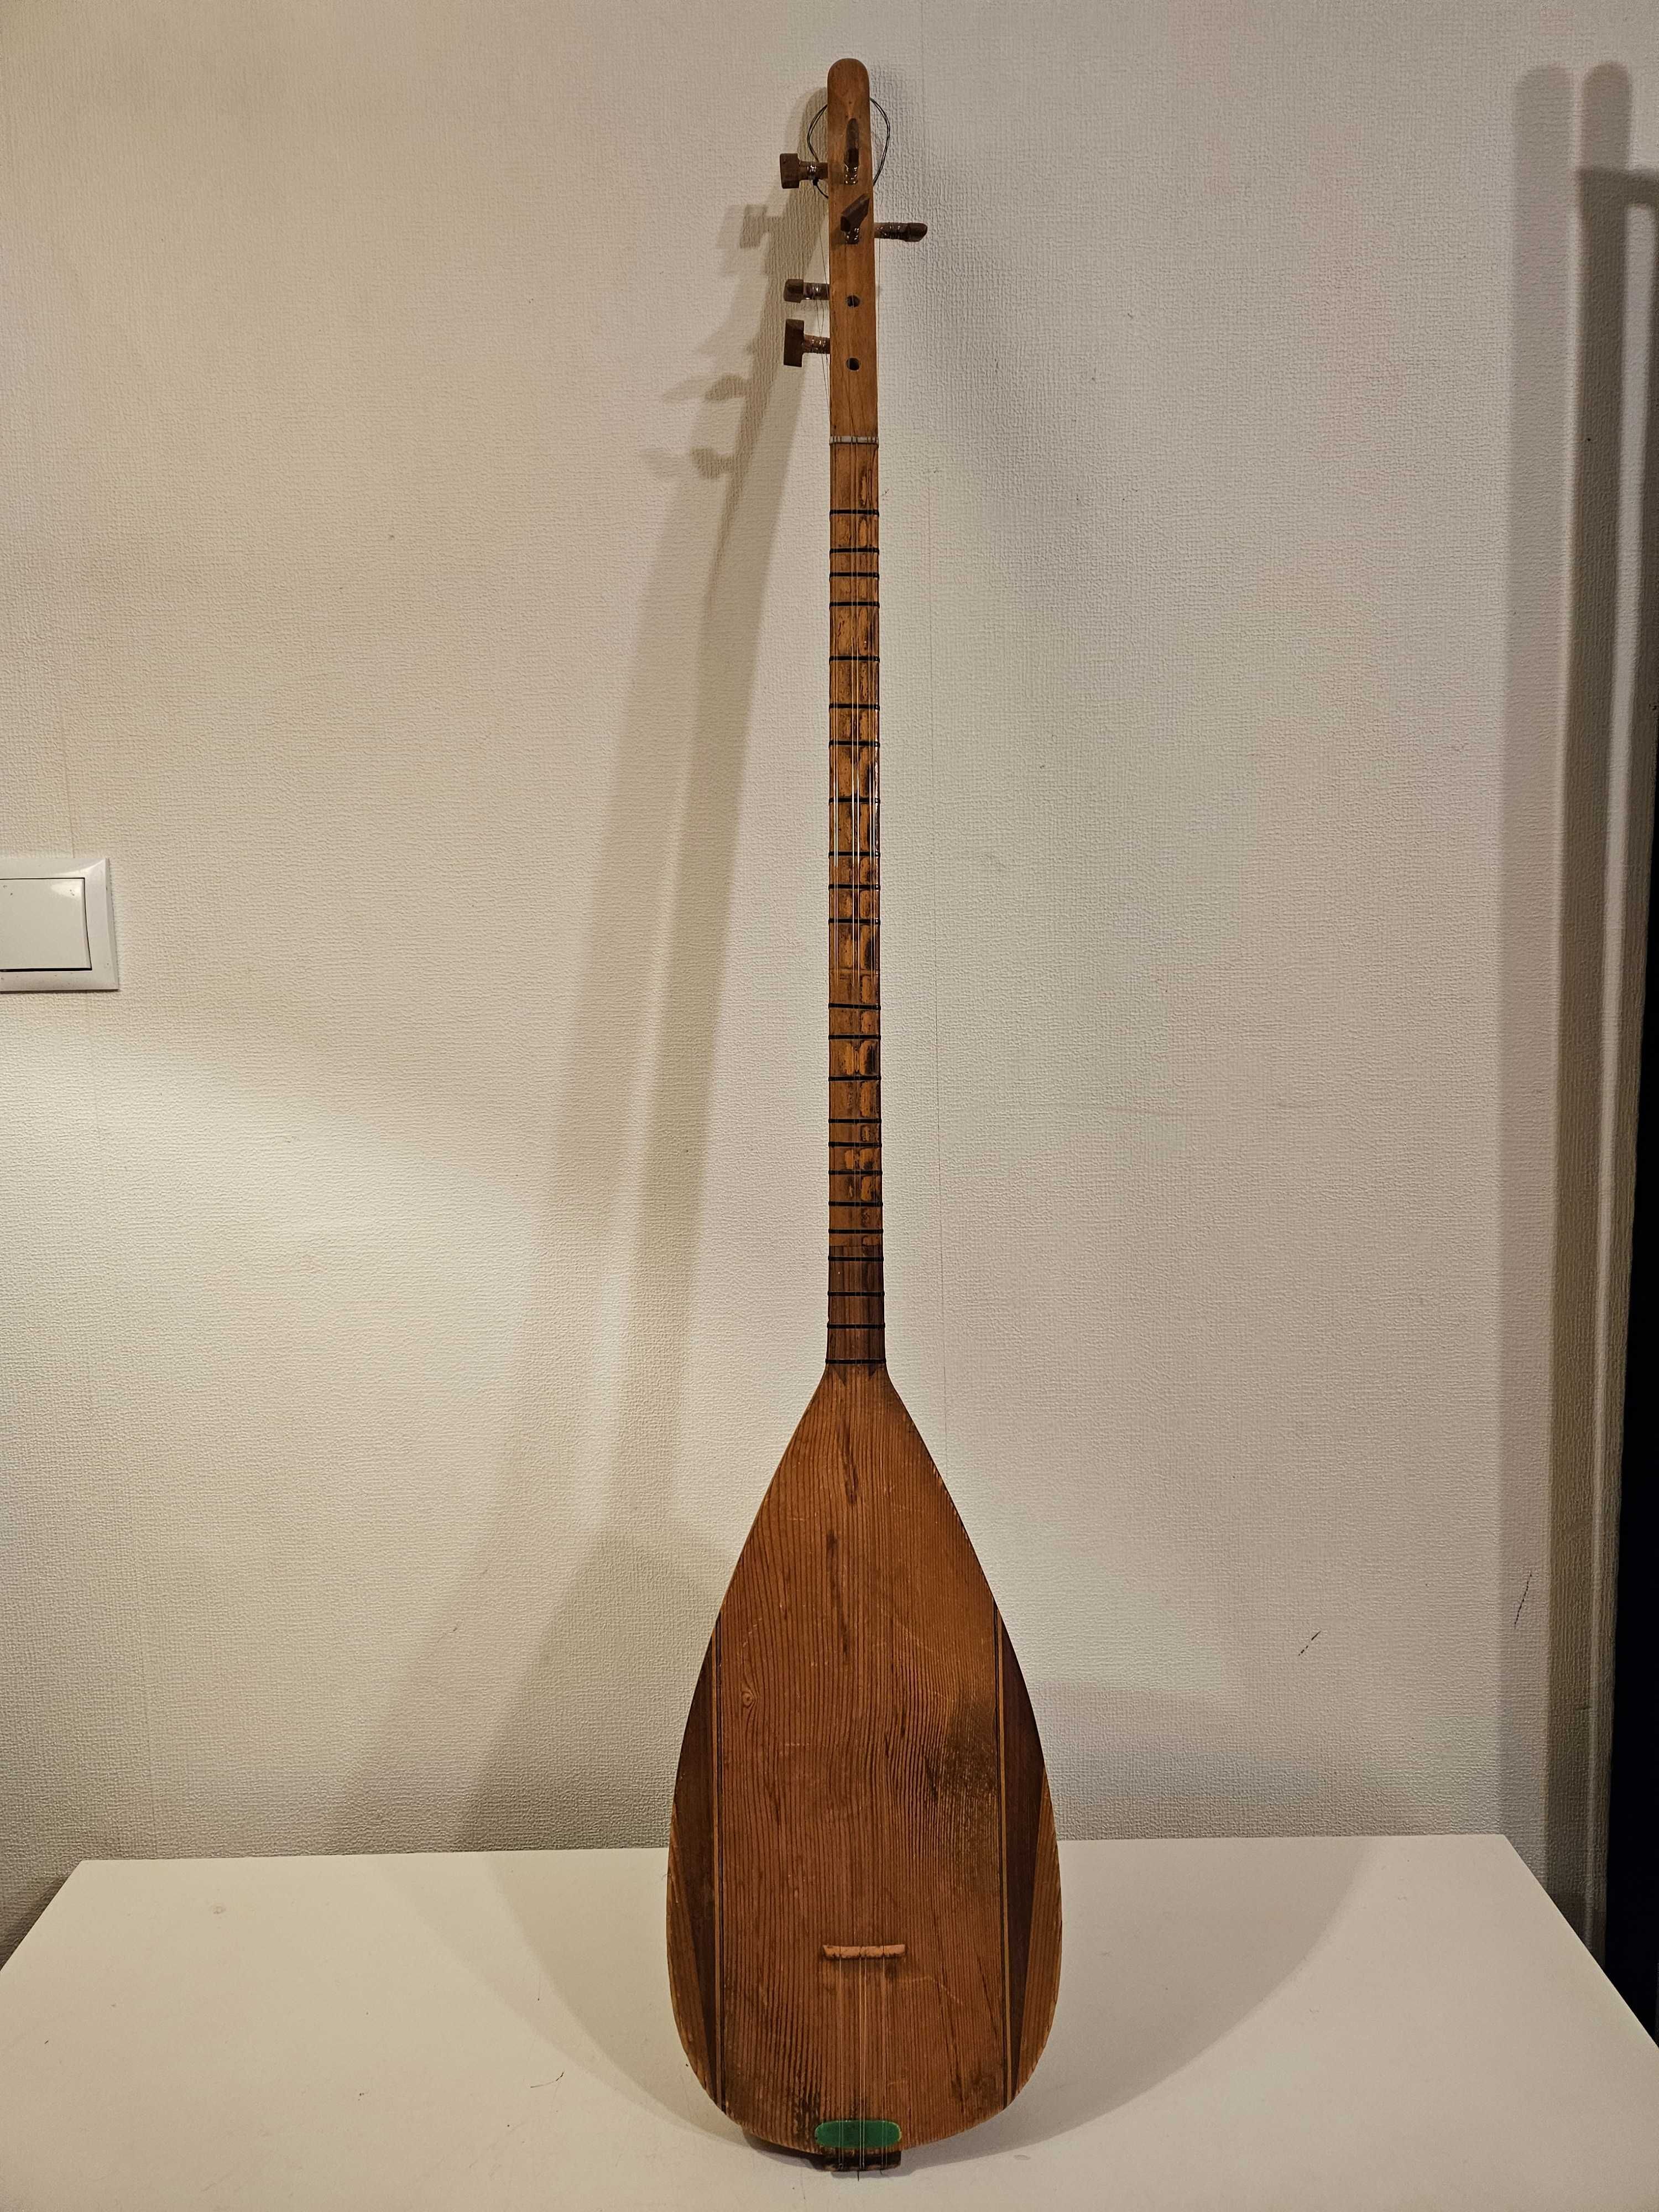 Stare duże indonezyjskie 8-jo strunowe banjo7